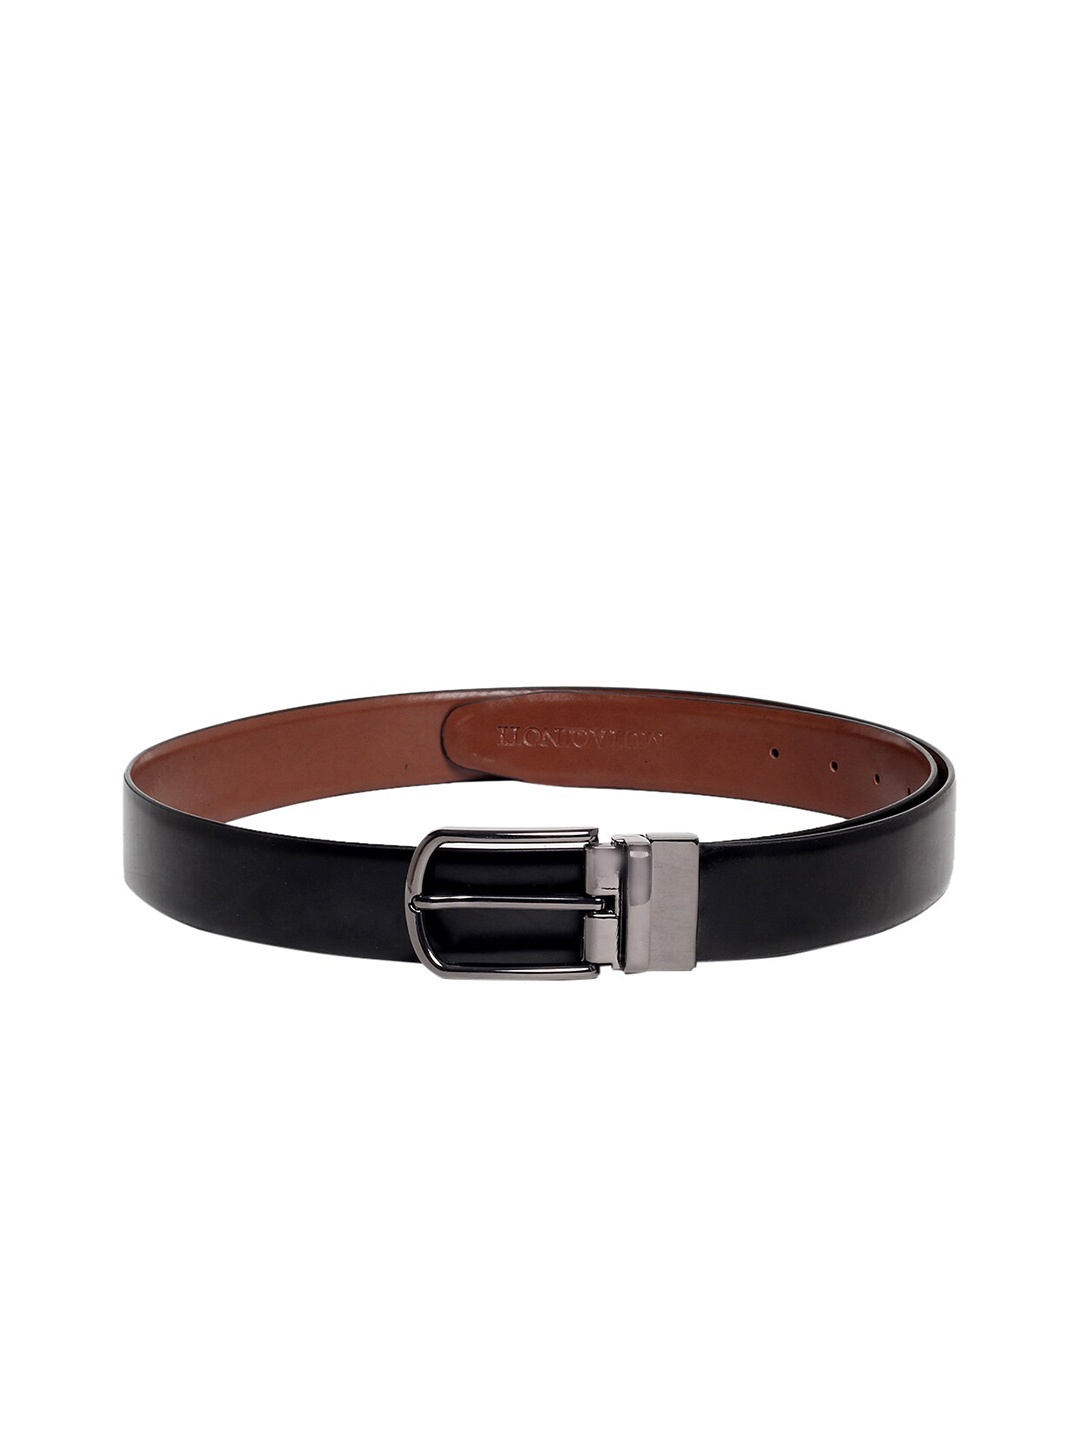 

MUTAQINOTI Men Black & Brown Leather Reversible Formal Belt